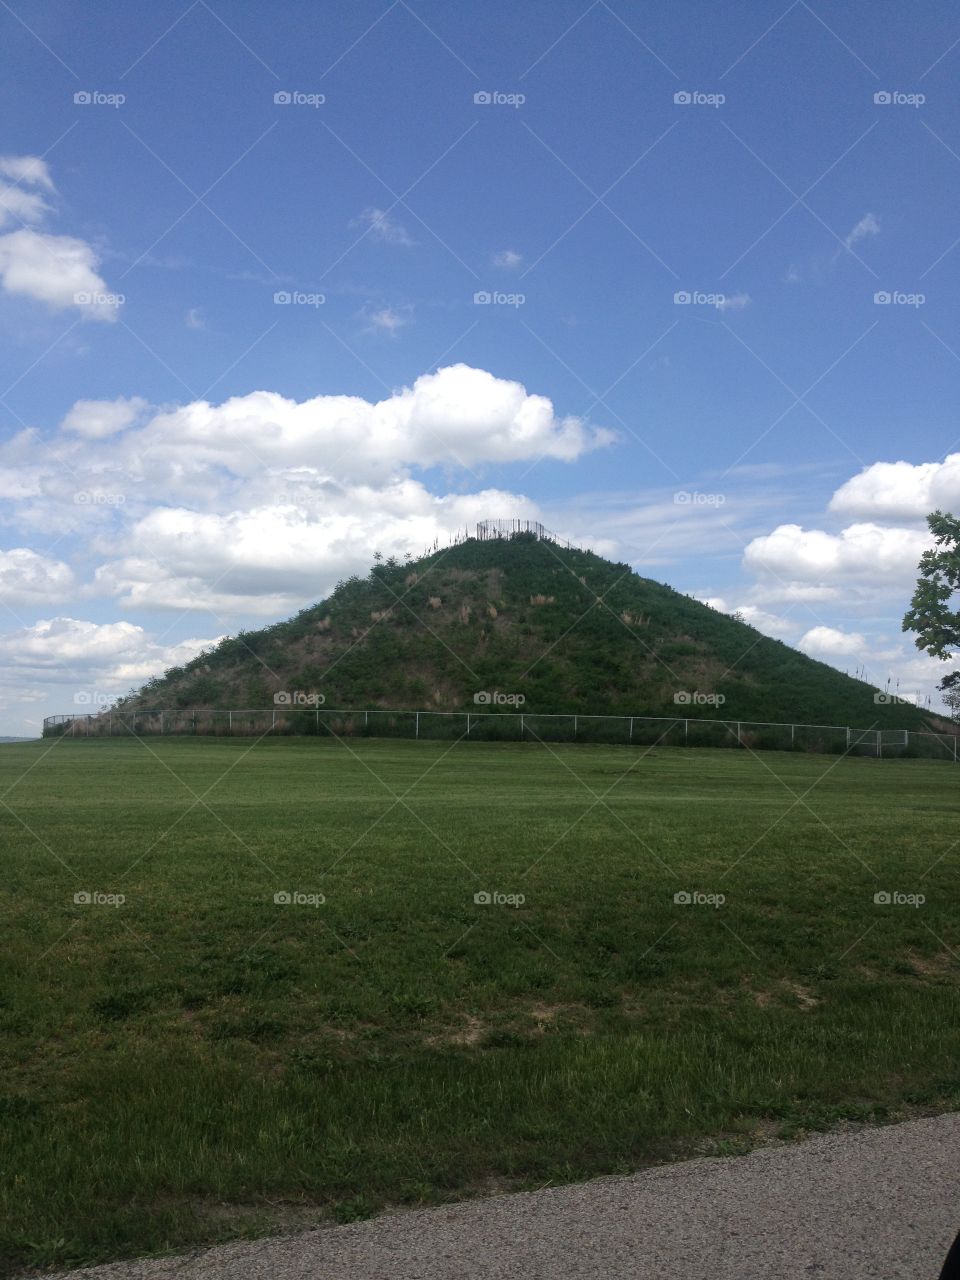 Indian mound 